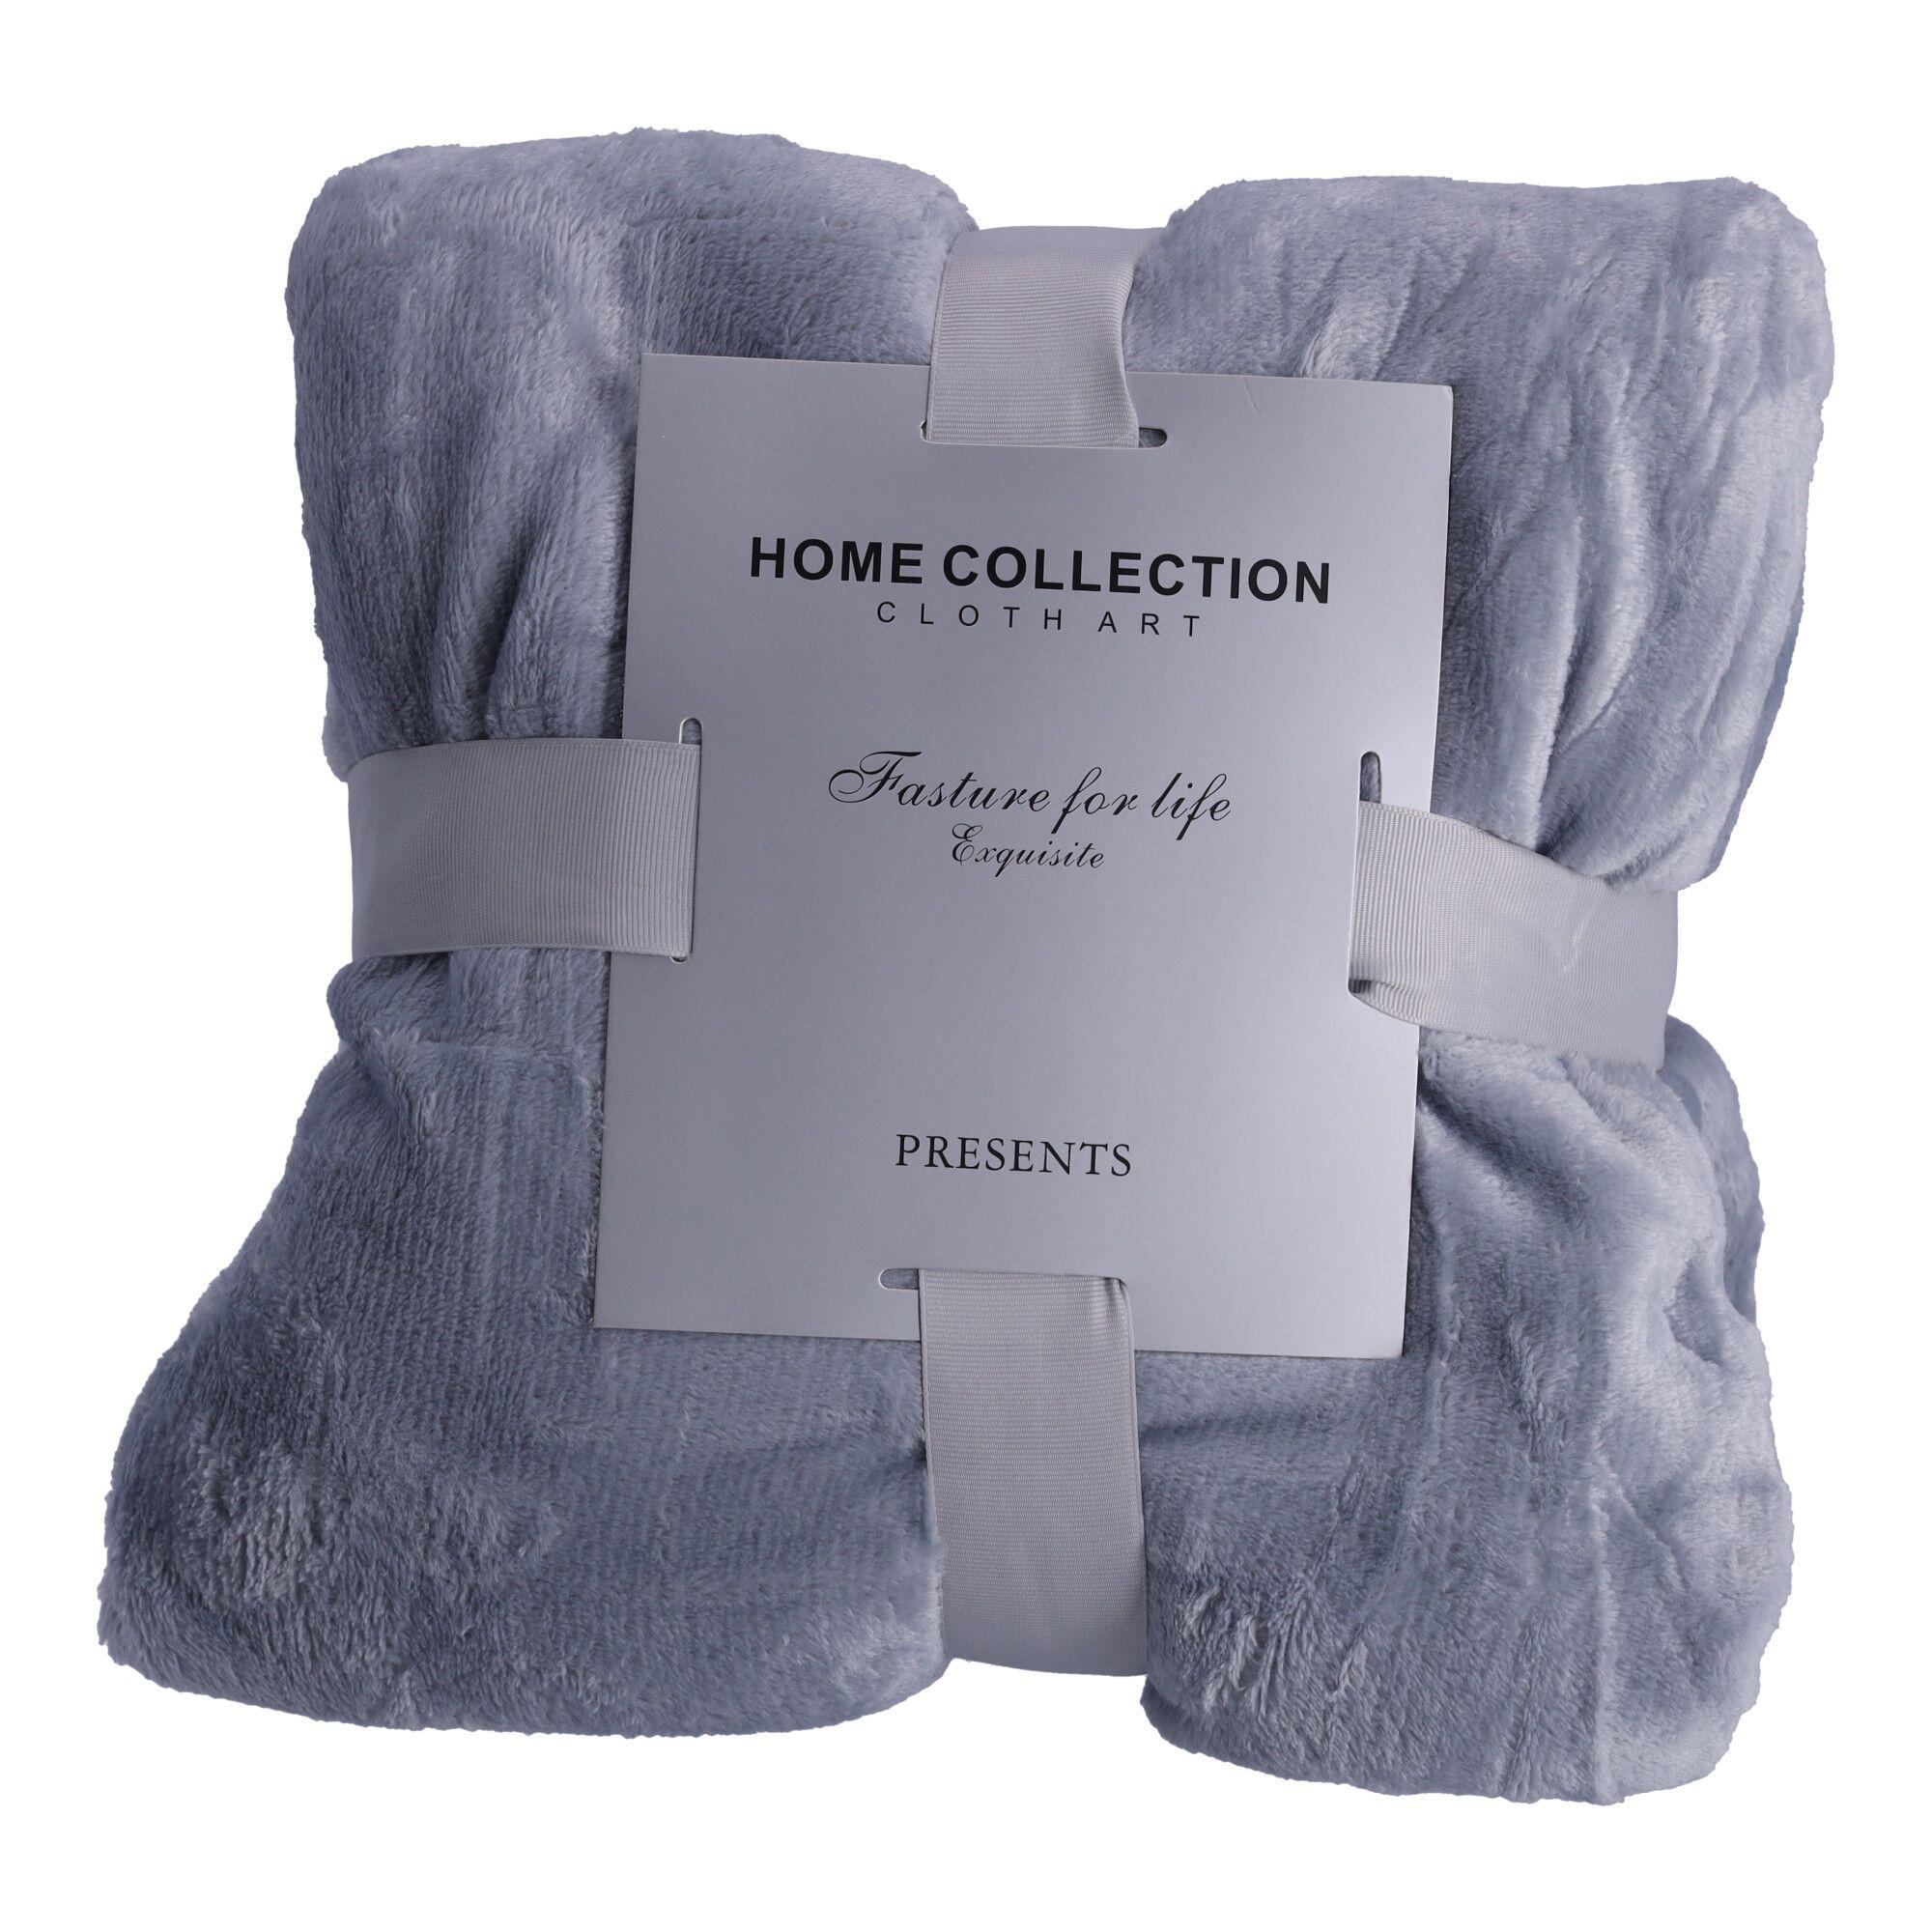 Fleece blanket, bedspread 180x200 cm - grey